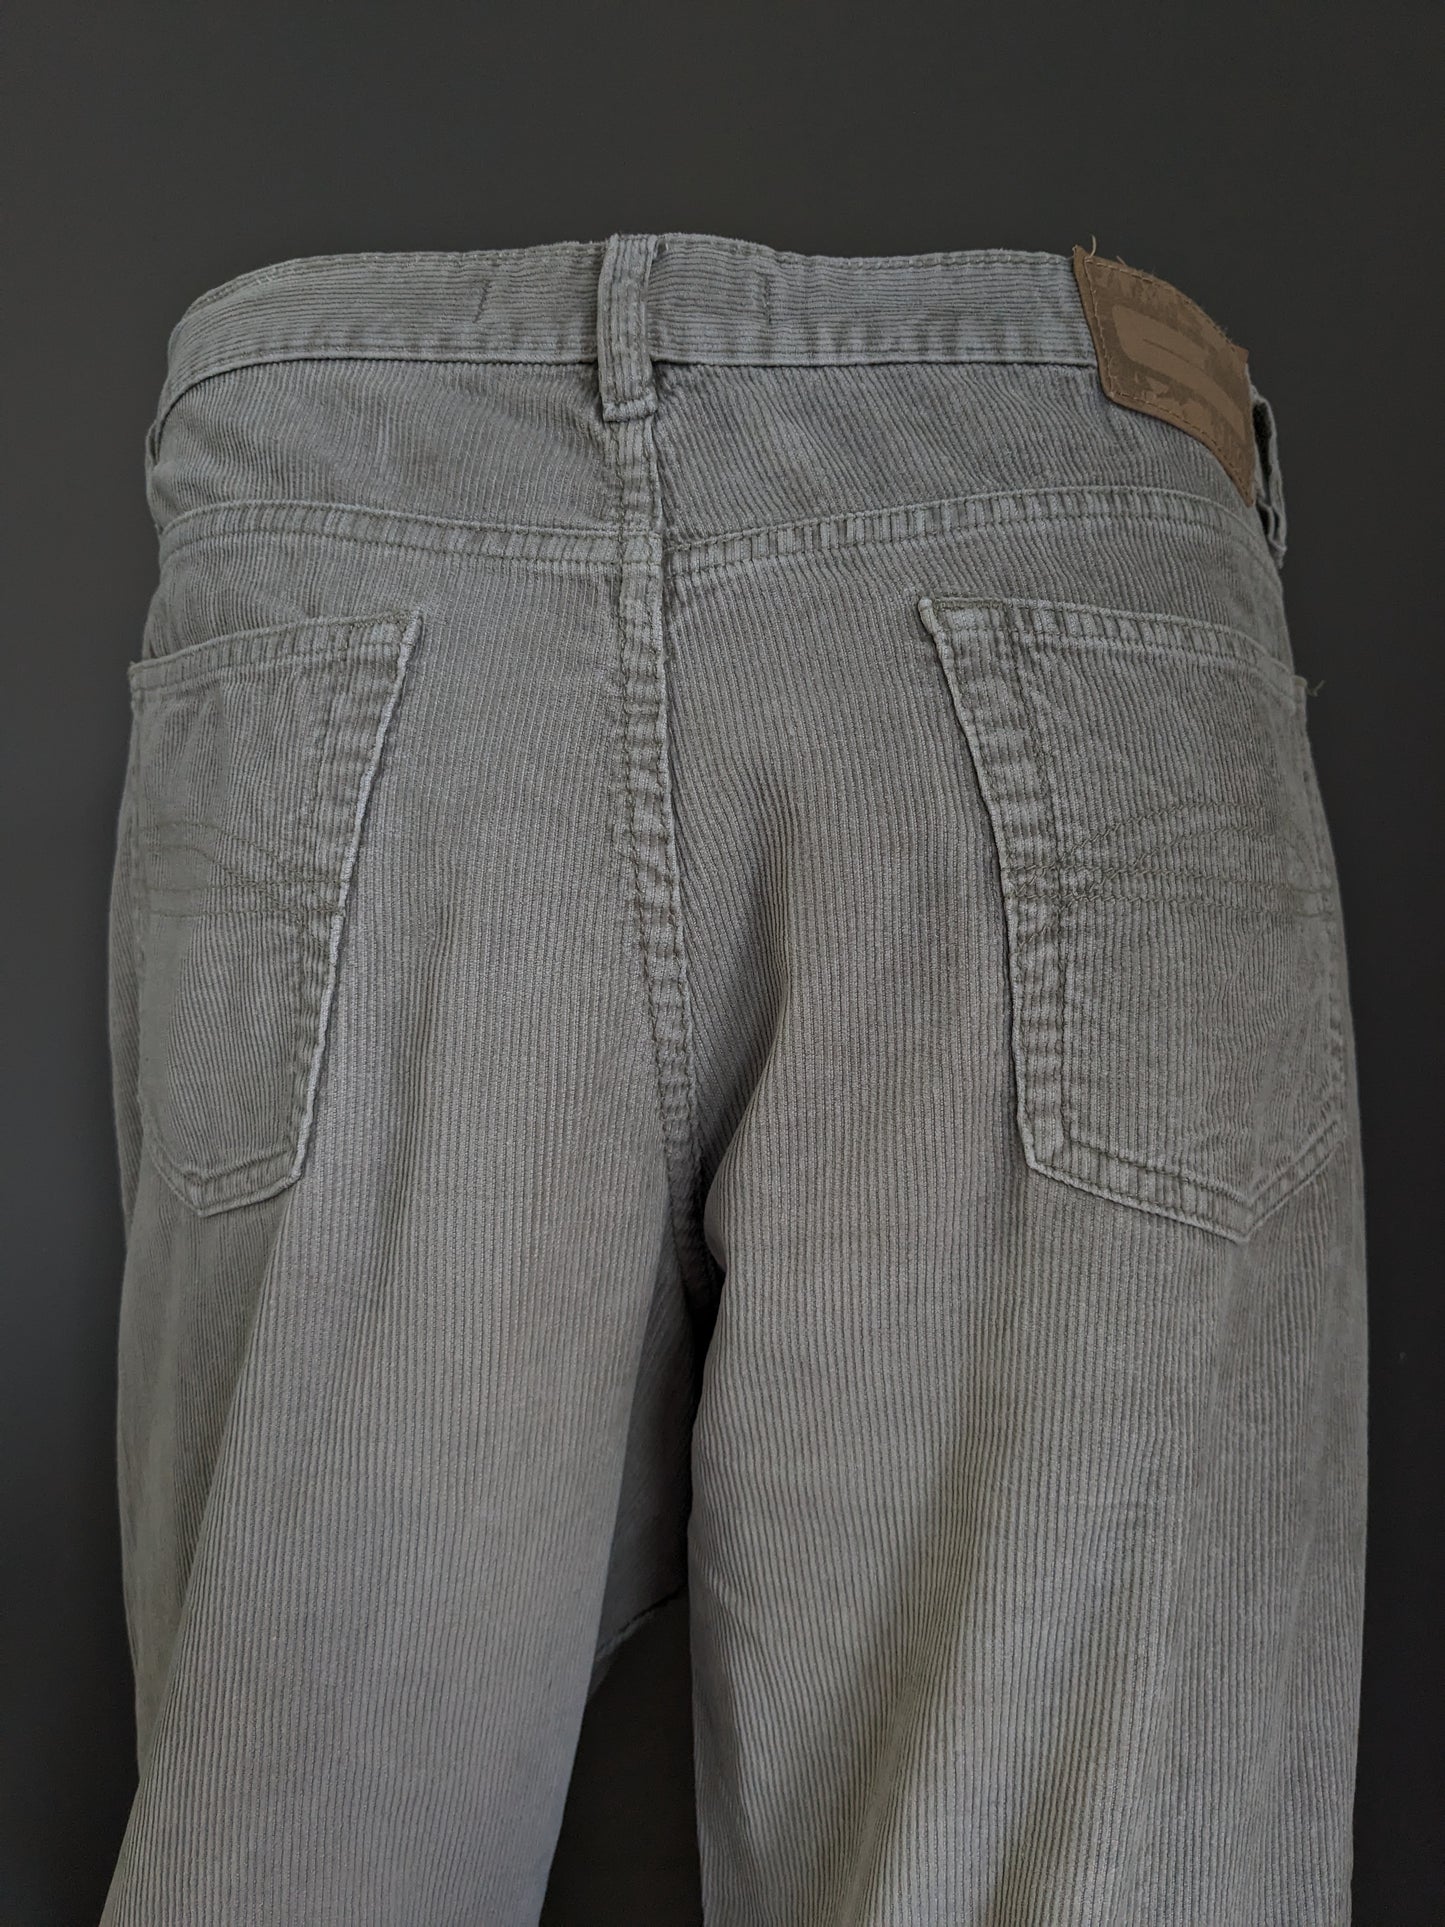 Pantaloni toracici vintage. Beige. Taglia W34 - L30.